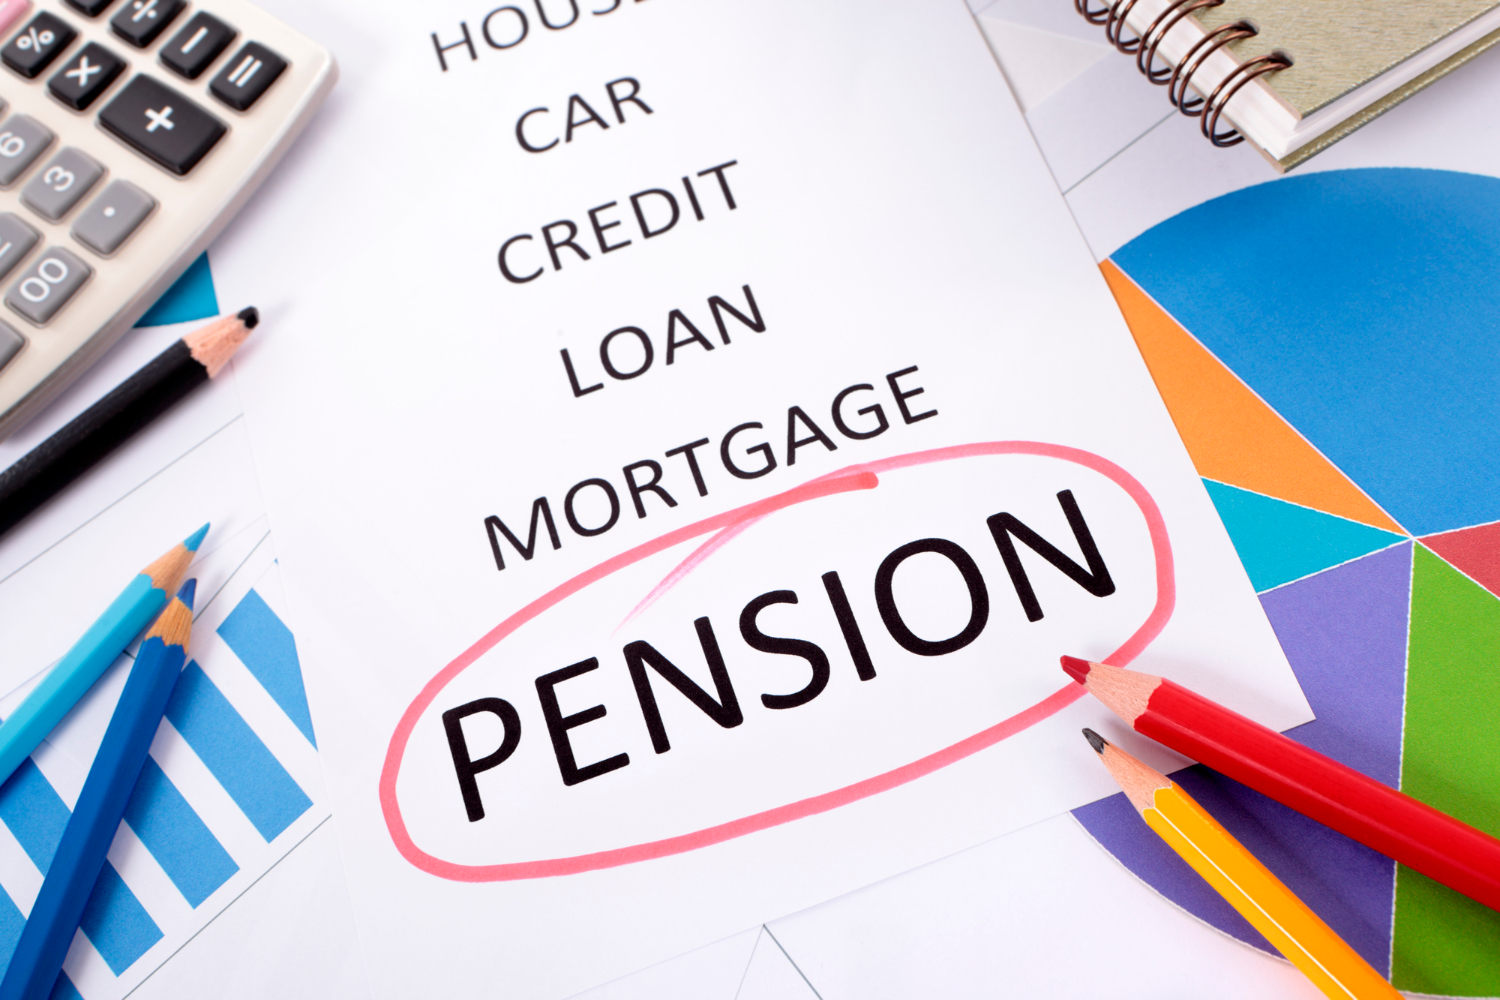 Dana pensiun adalah badan hukum yang menyelenggarakan program dana pensiun.